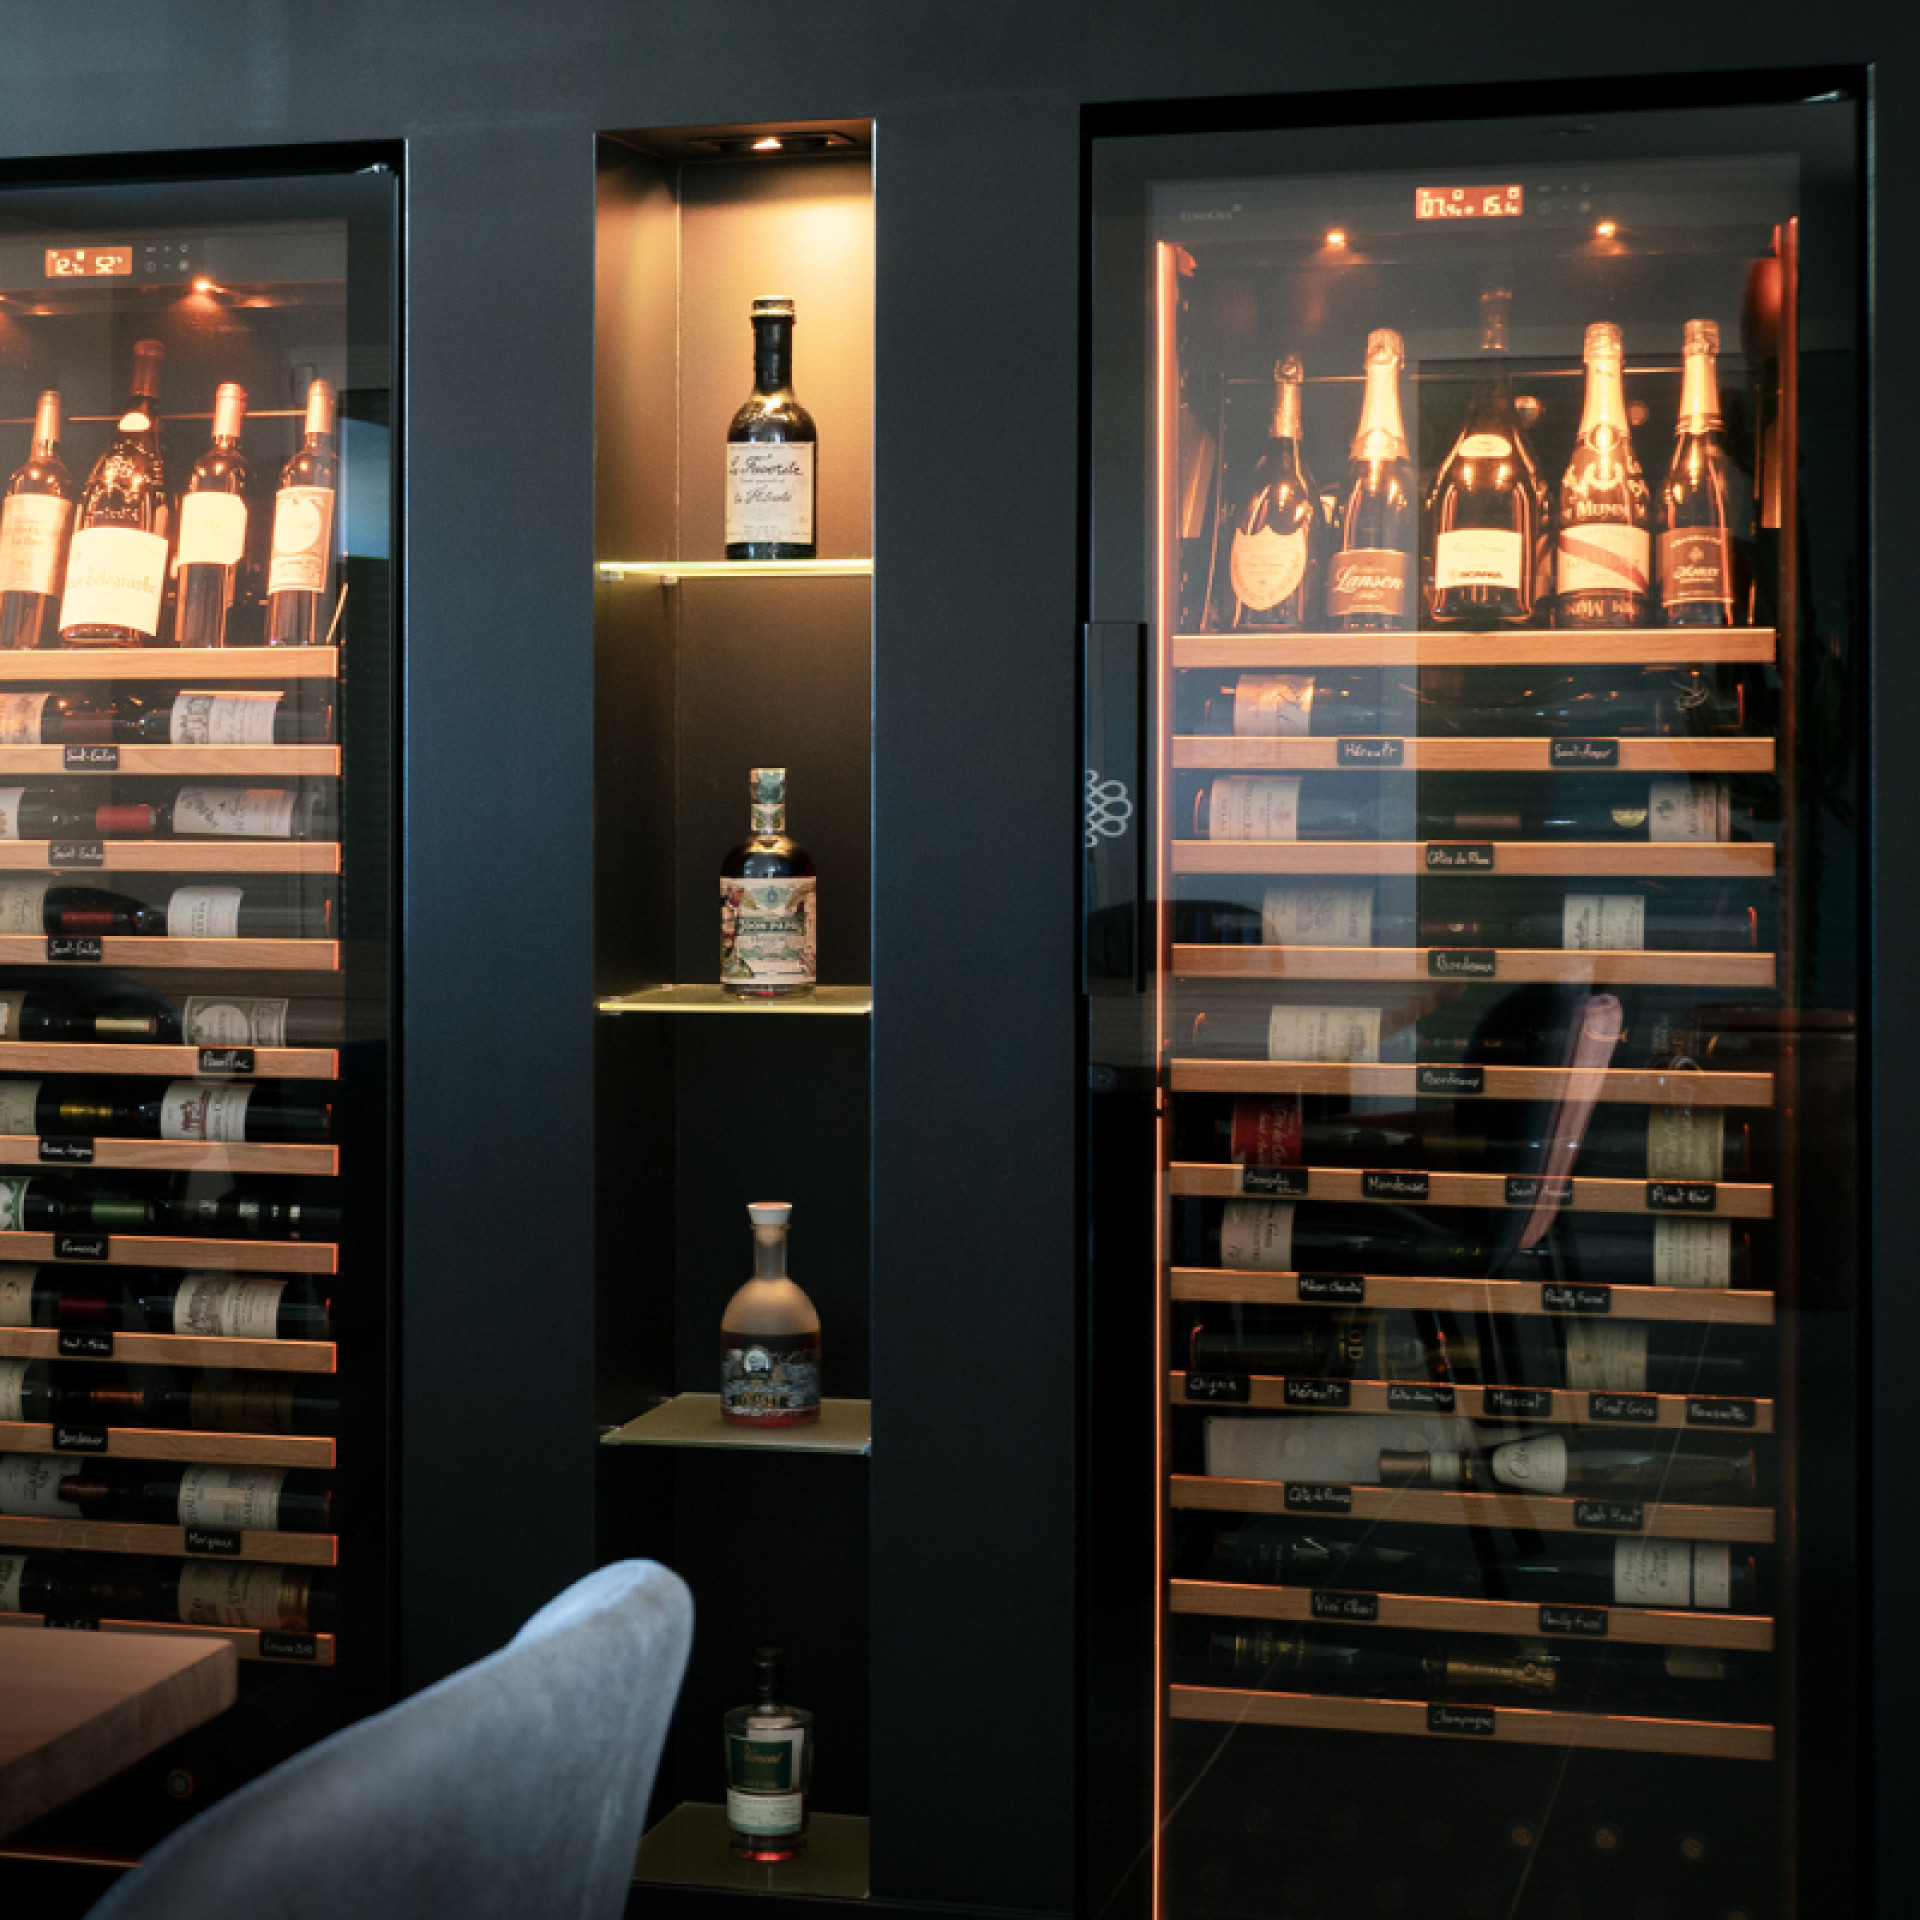 Professionelle Weinkeller mit Premium-Optionen, eingebaut in eine Nische in der Wand, mit schöner Flaschenbeleuchtung im Schrank.